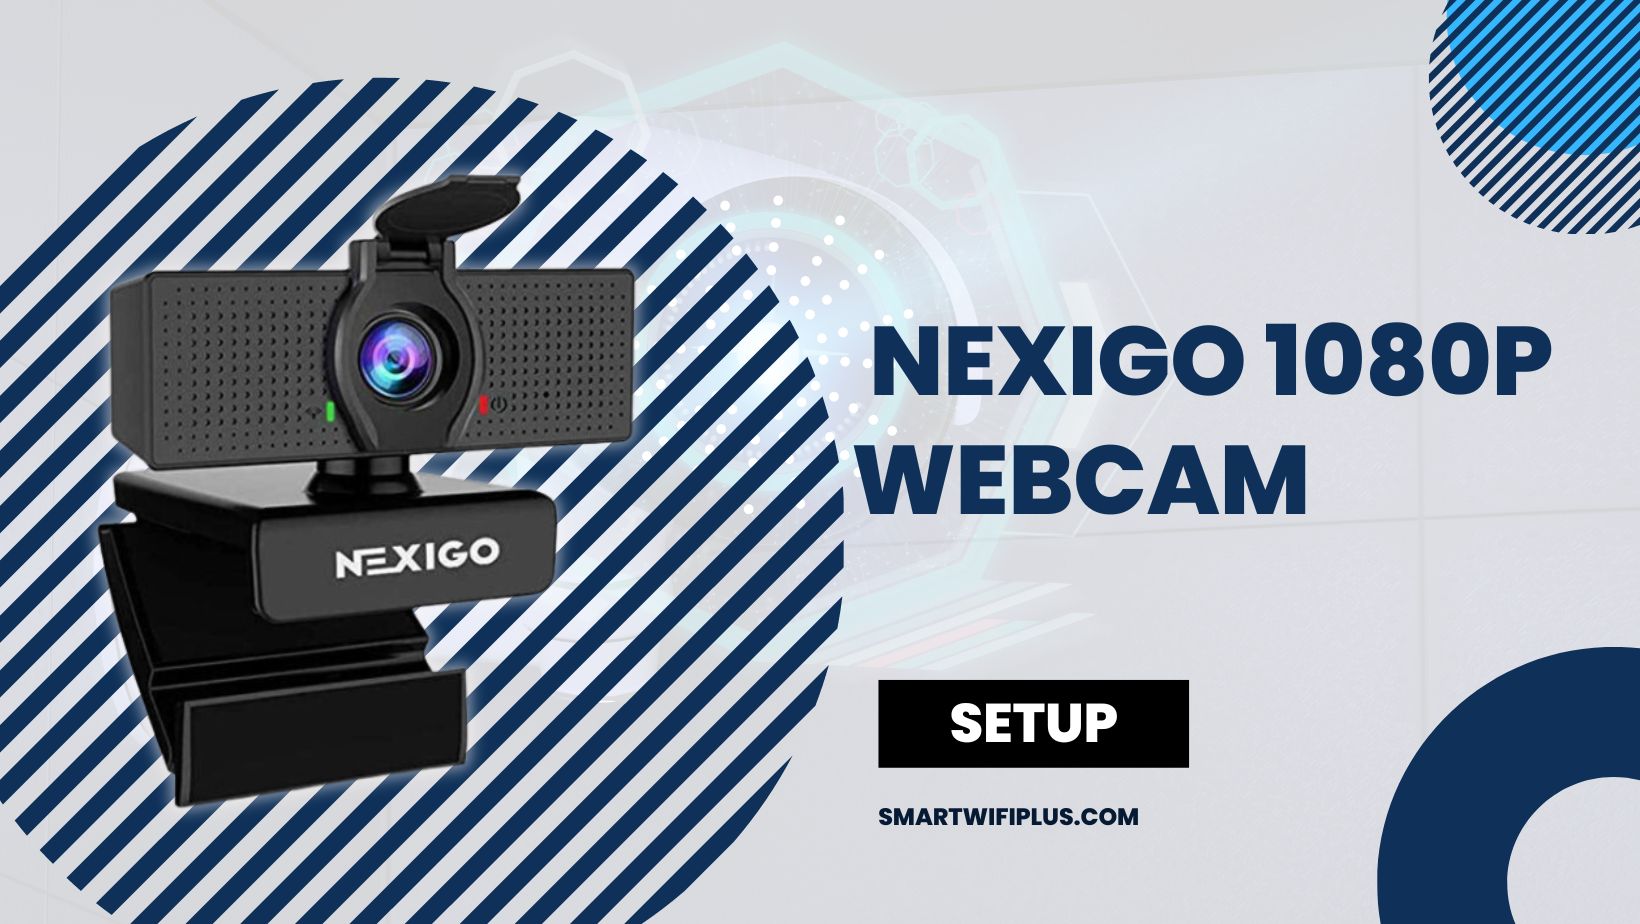 Setup NexiGo 1080p Webcam